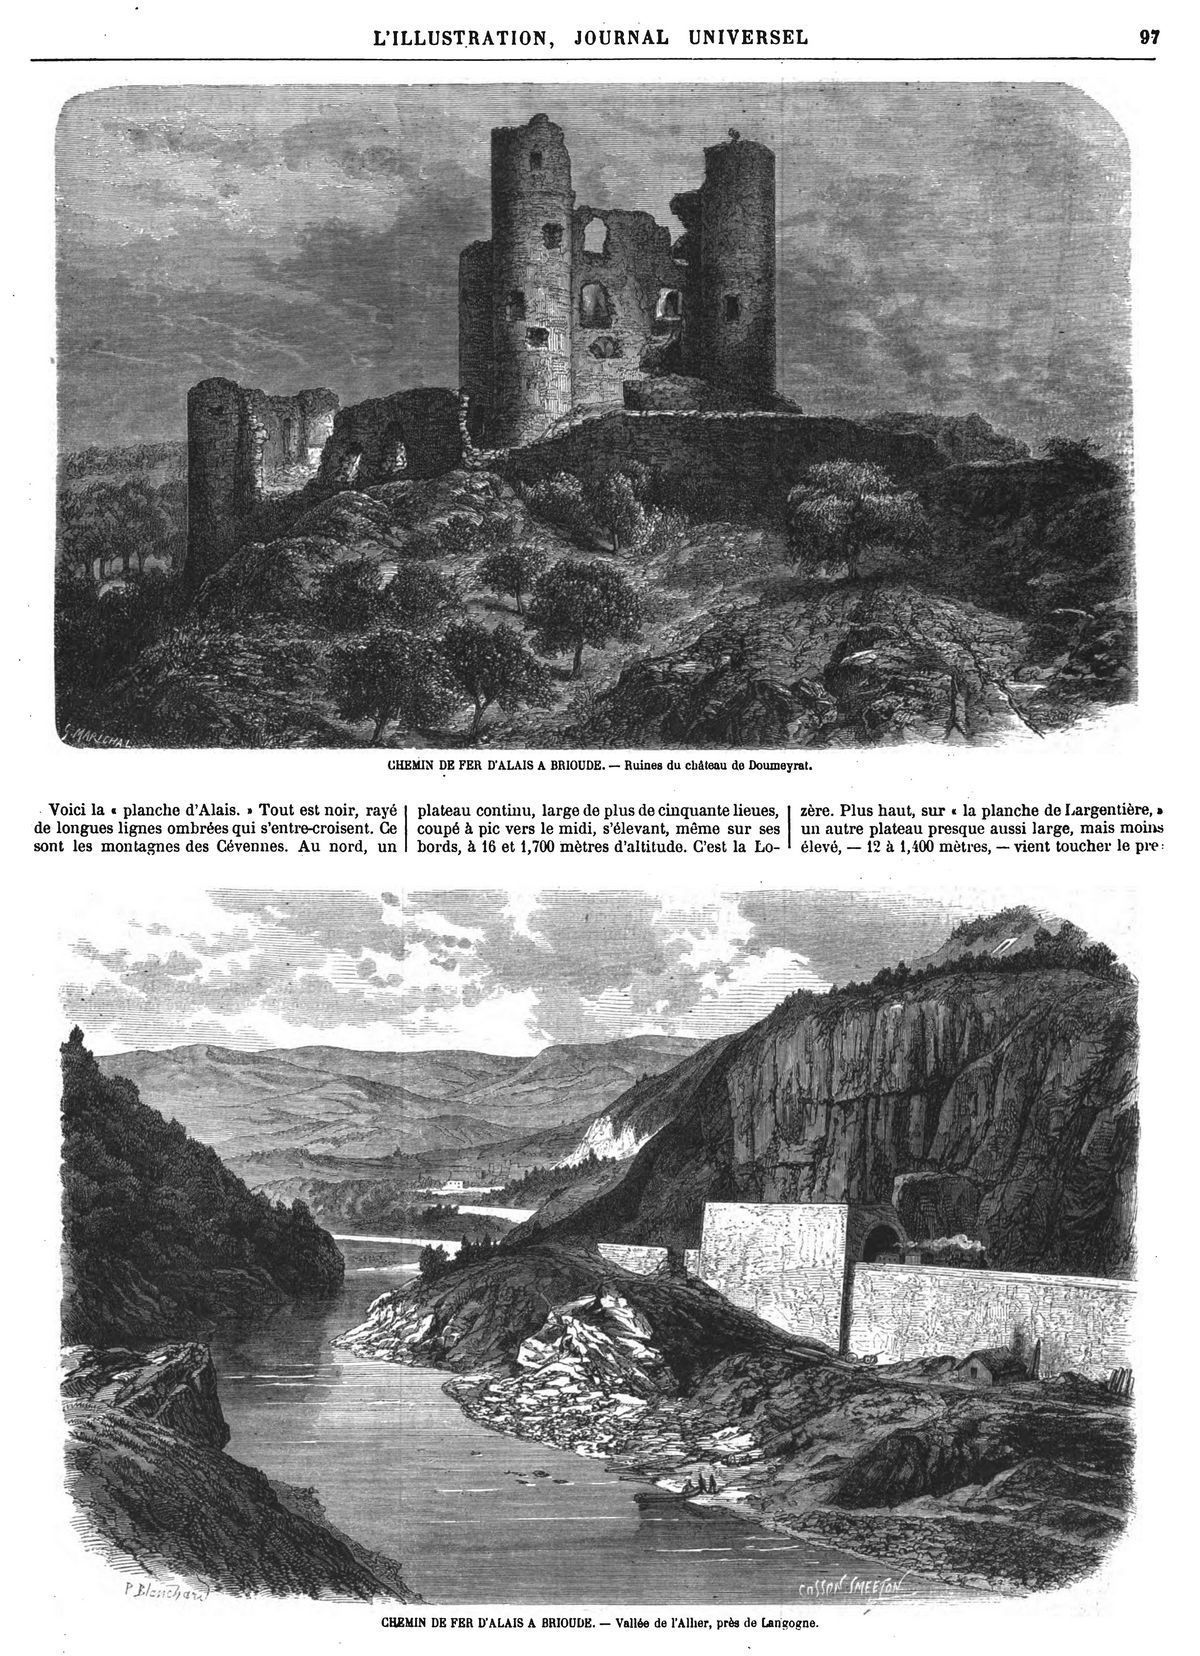 CHEMIN DE FER D'ALAIS A BRIOUDE. — Ruines du château de Doumeyrat.